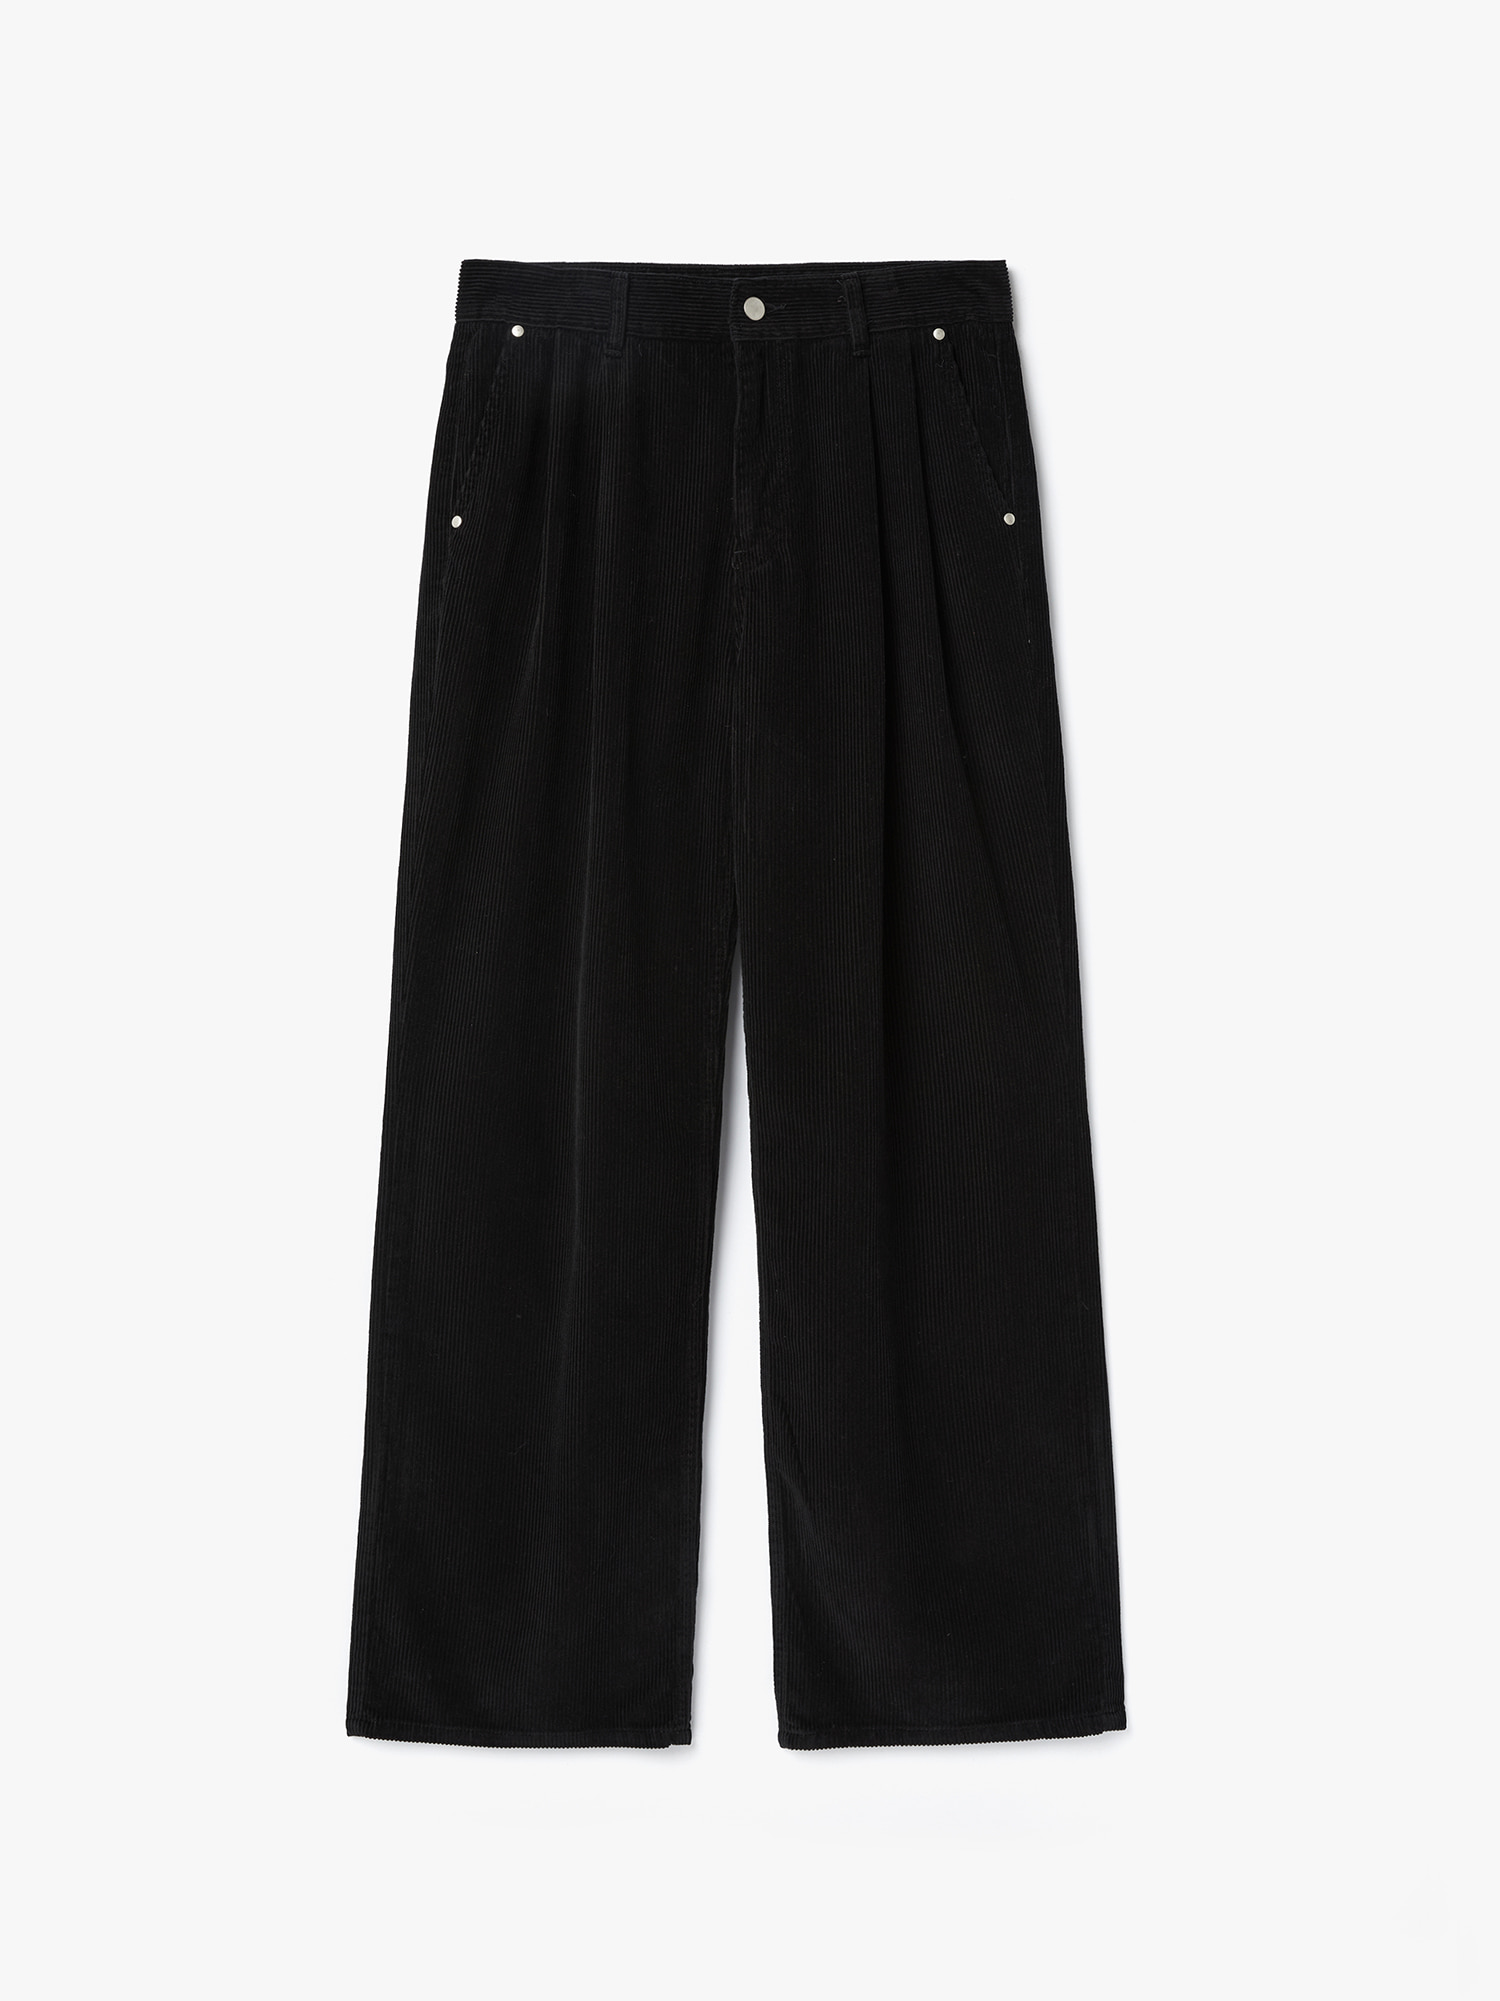 8W Corduroy Two-Tuck Pants (Black)